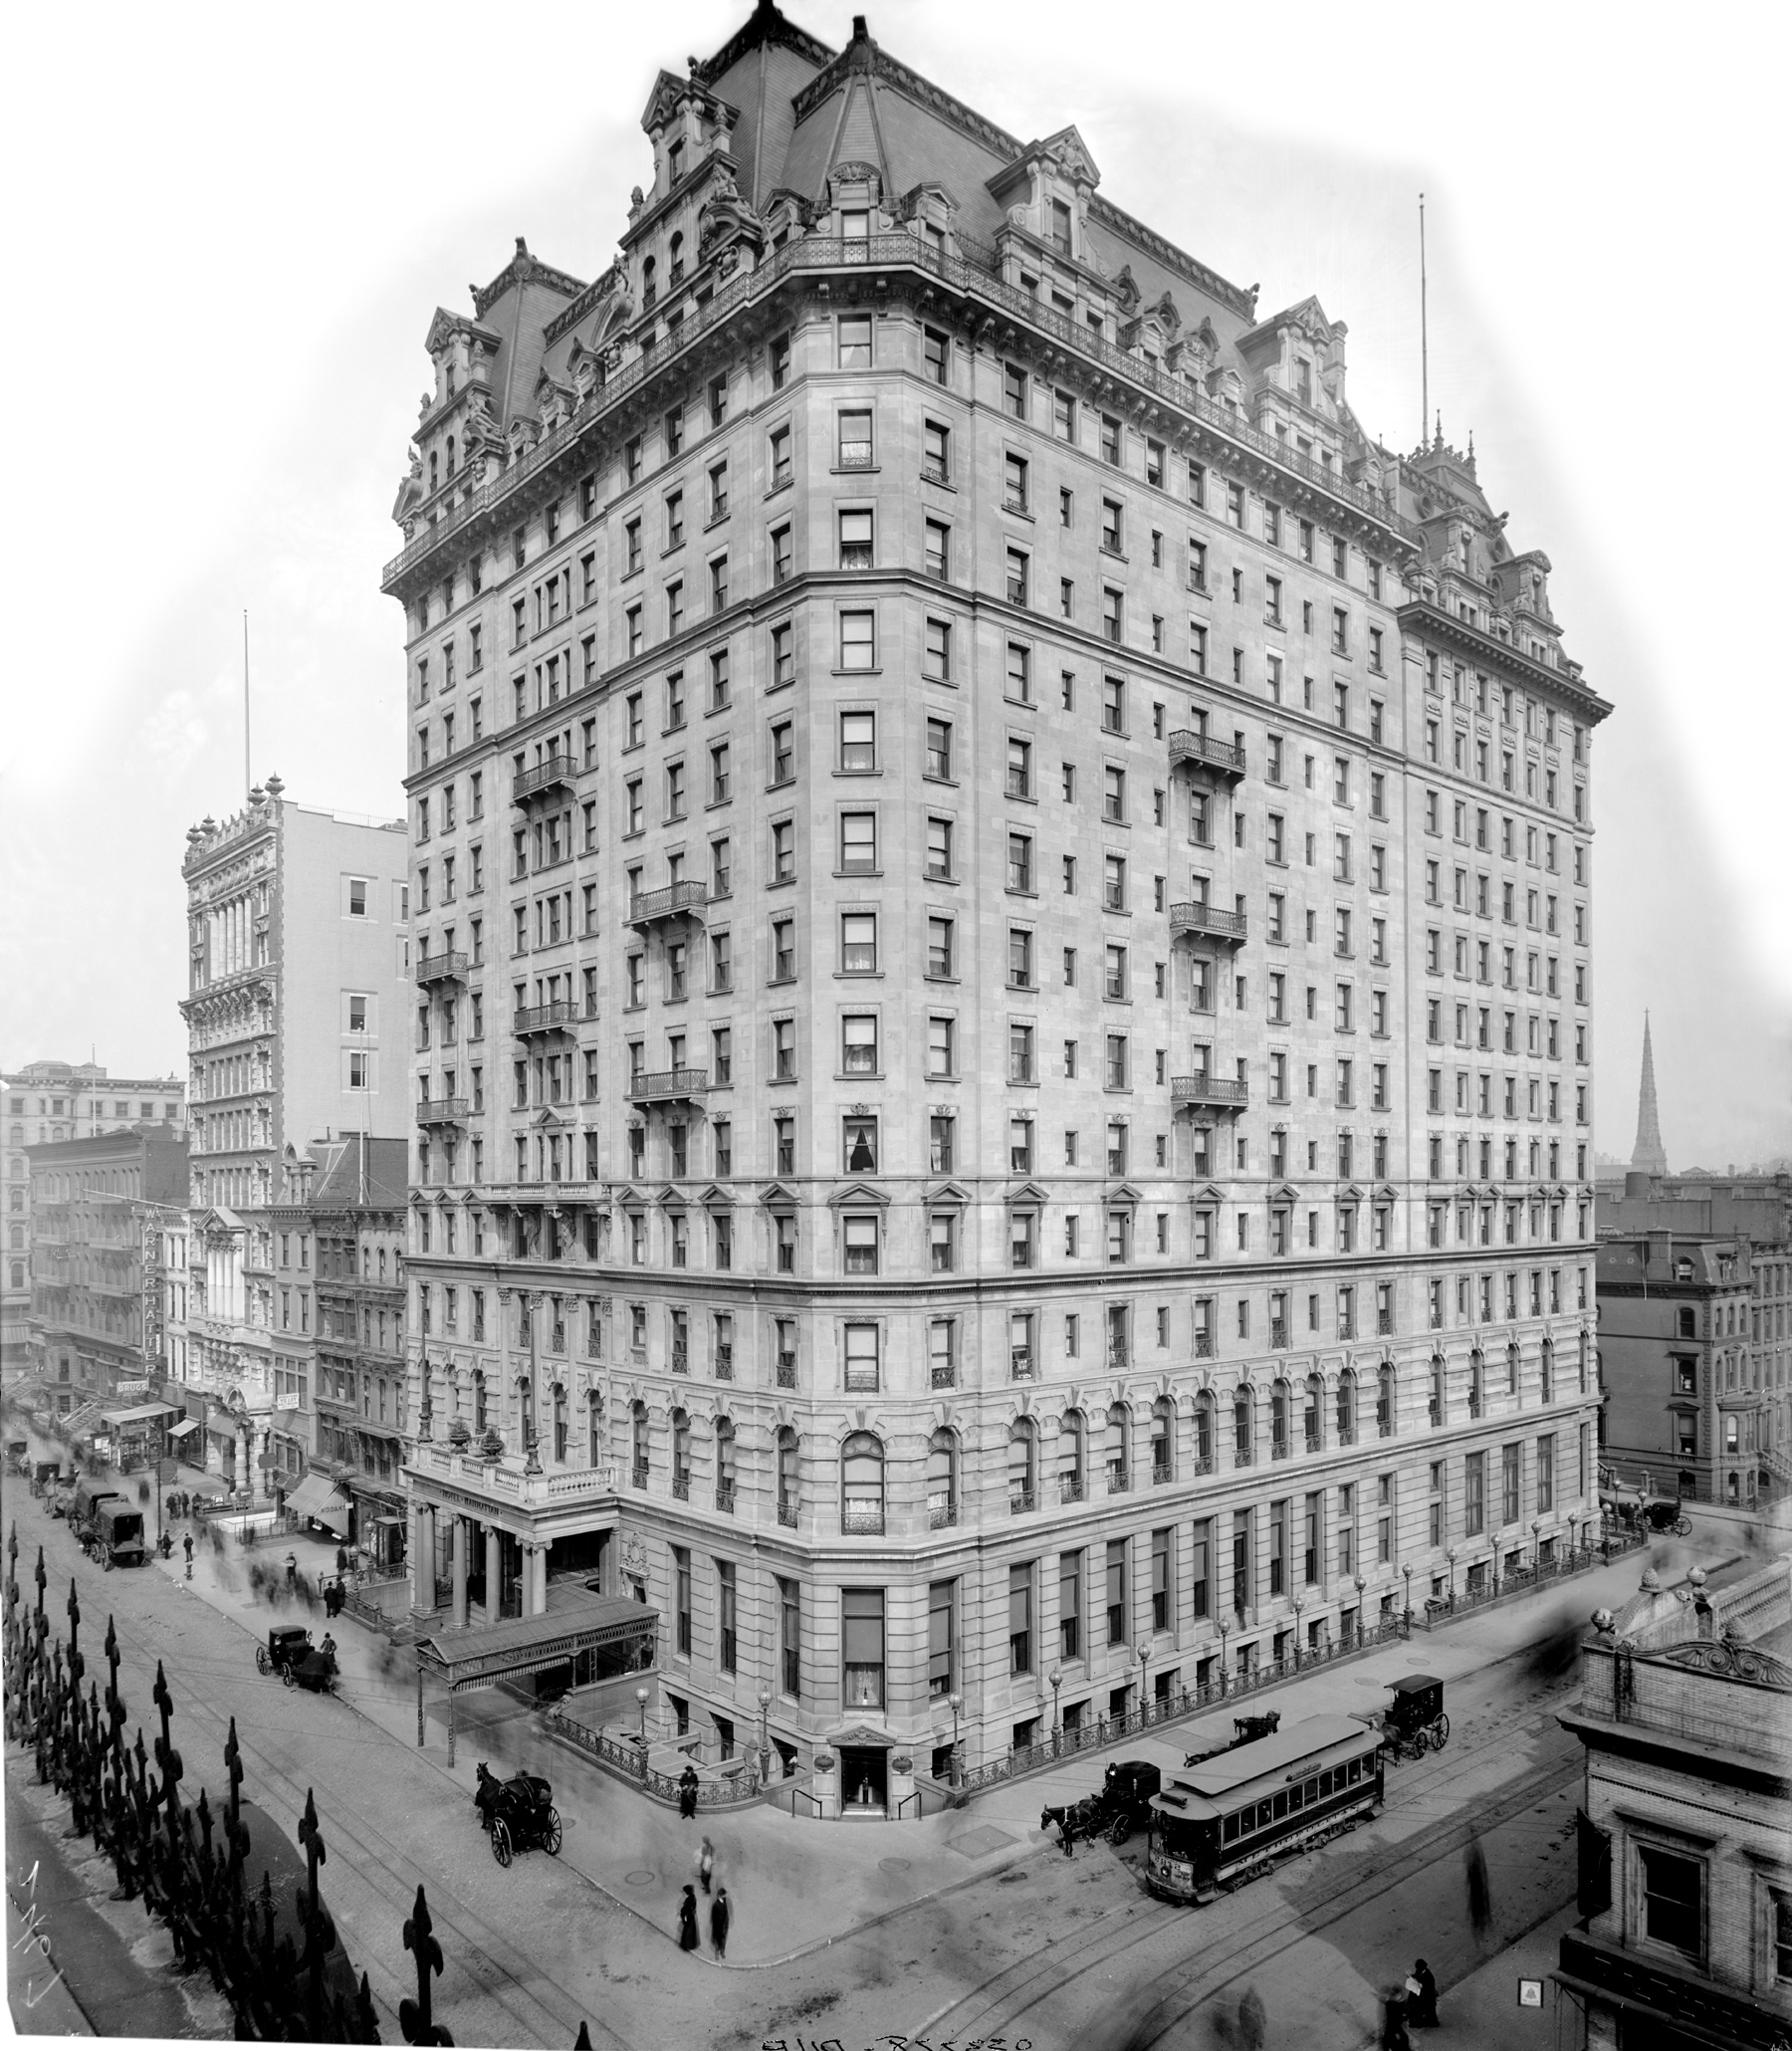 Hotel Manhattan